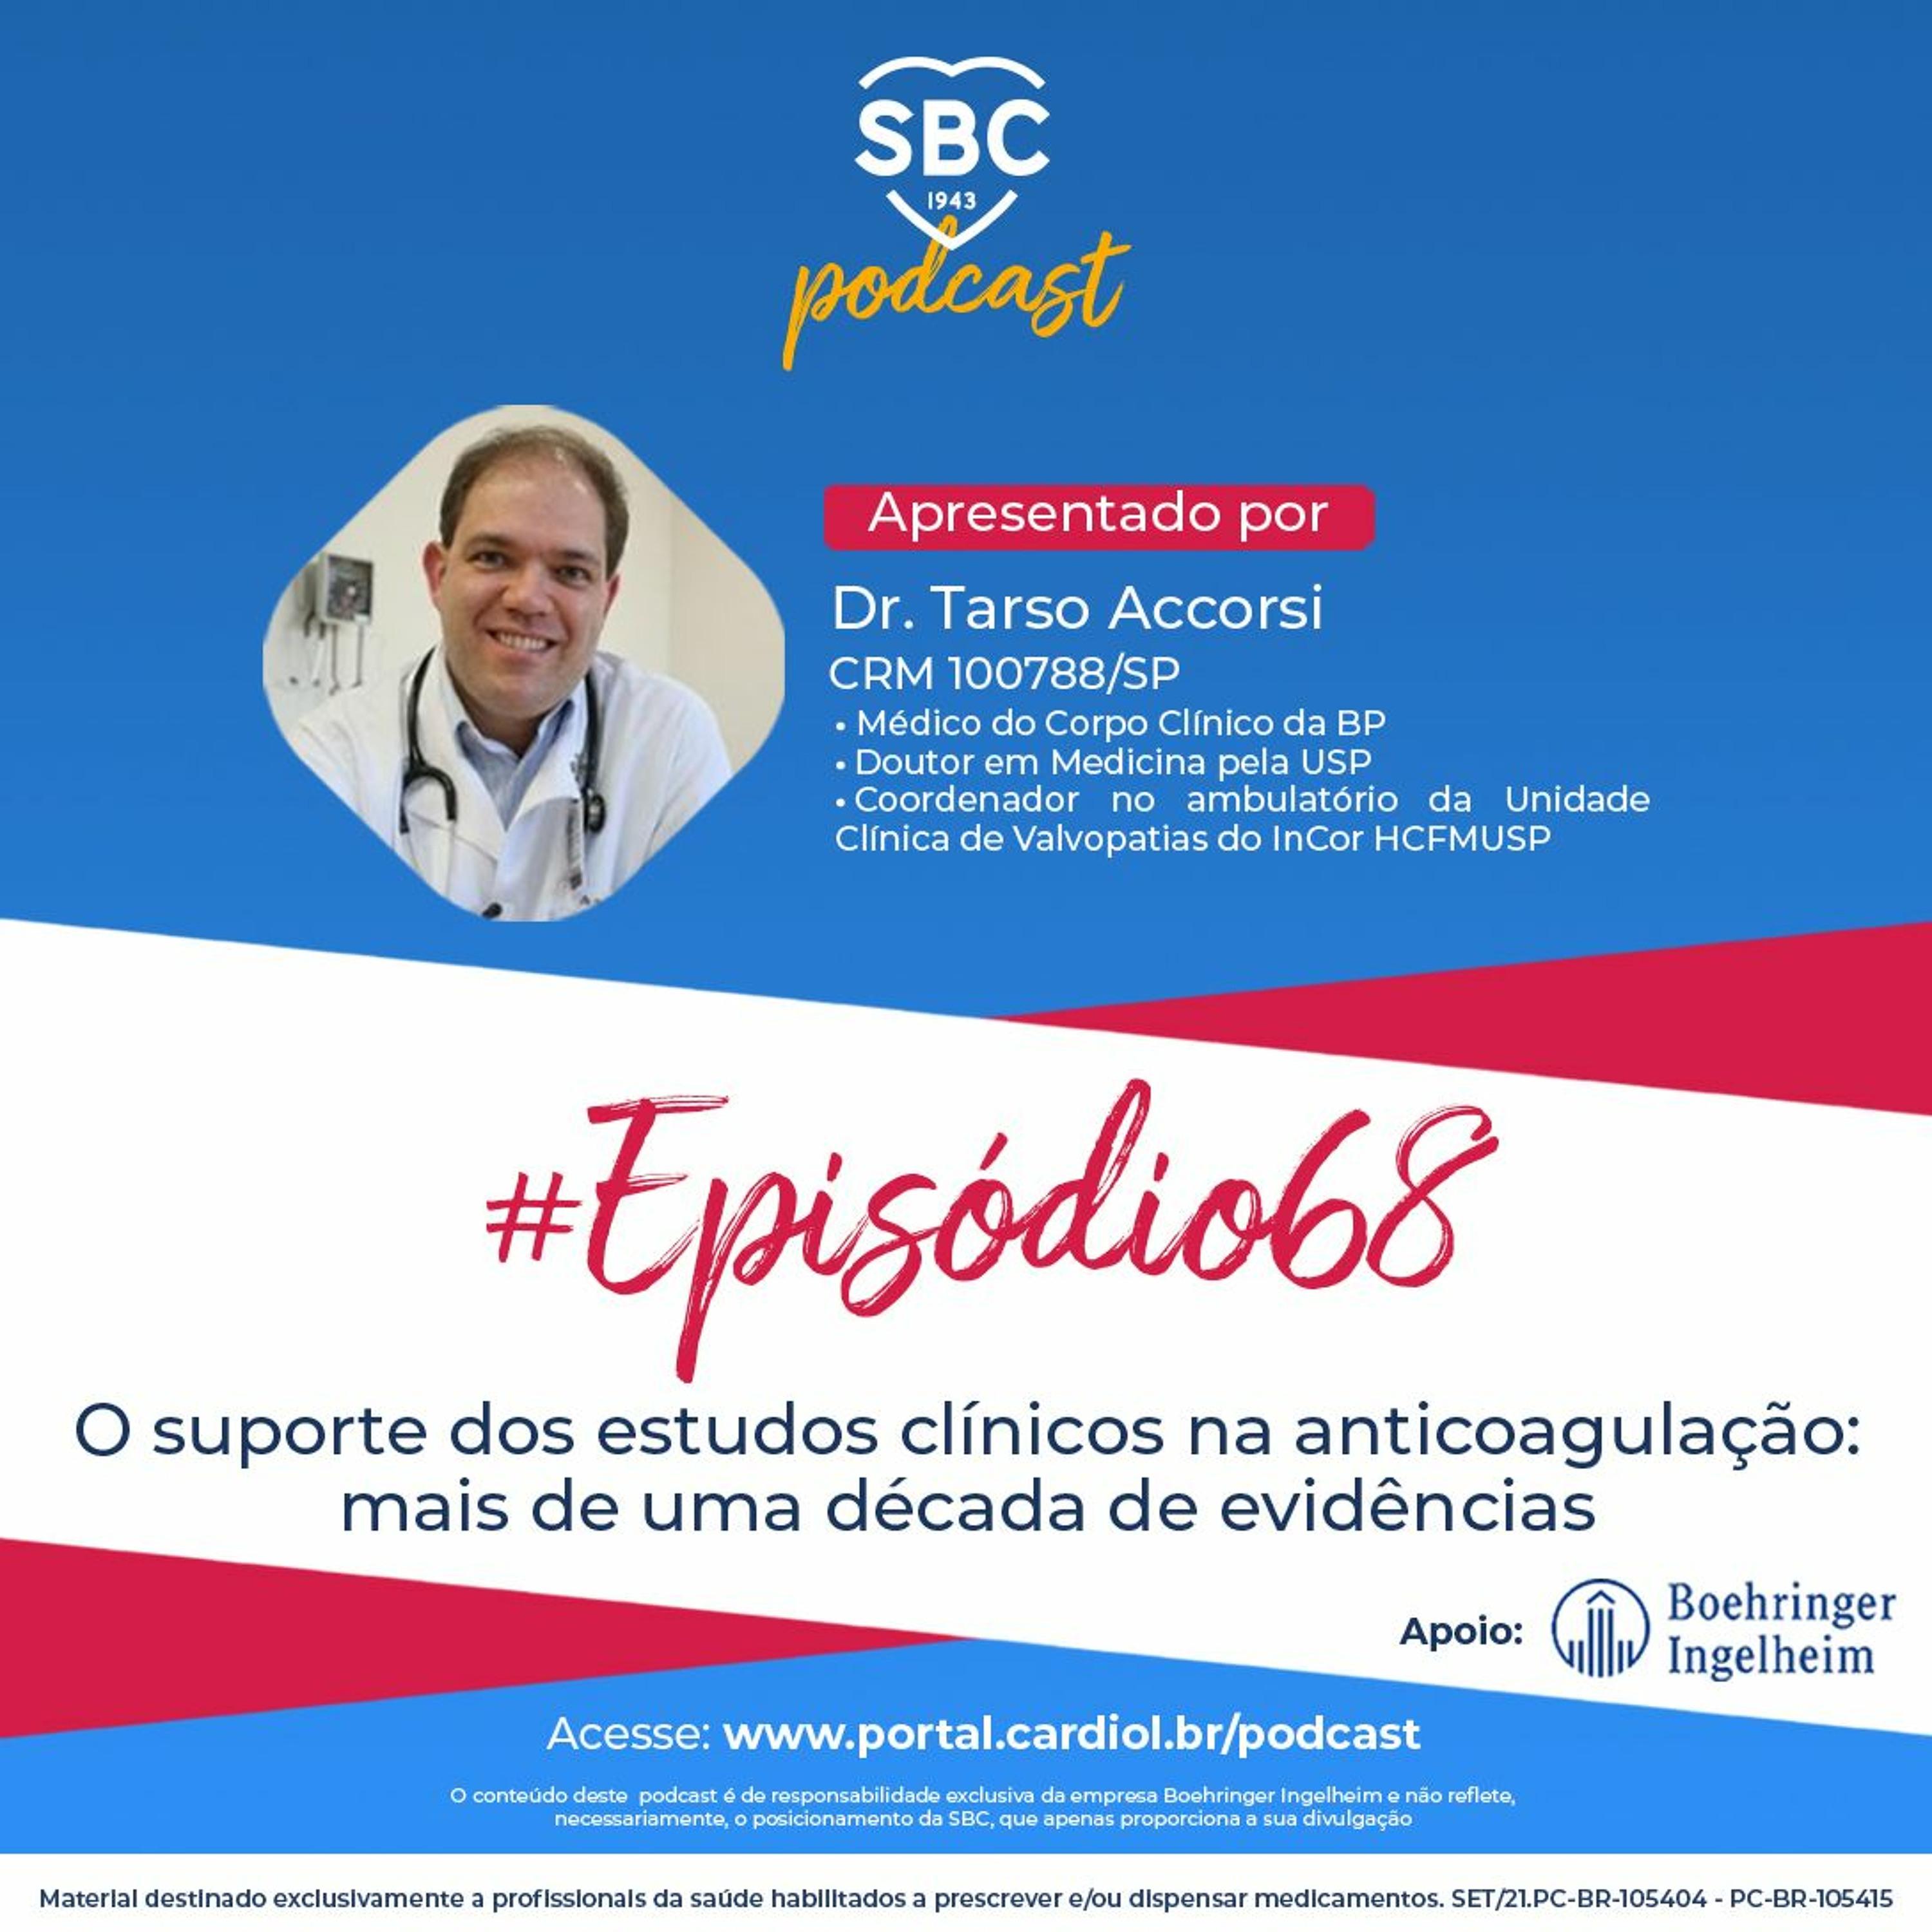 Podcast SBC 068 - O suporte dos estudos clínicos na anticoagulação: mais de uma década de evidências by SBC - Sociedade Brasileira de Cardiologia